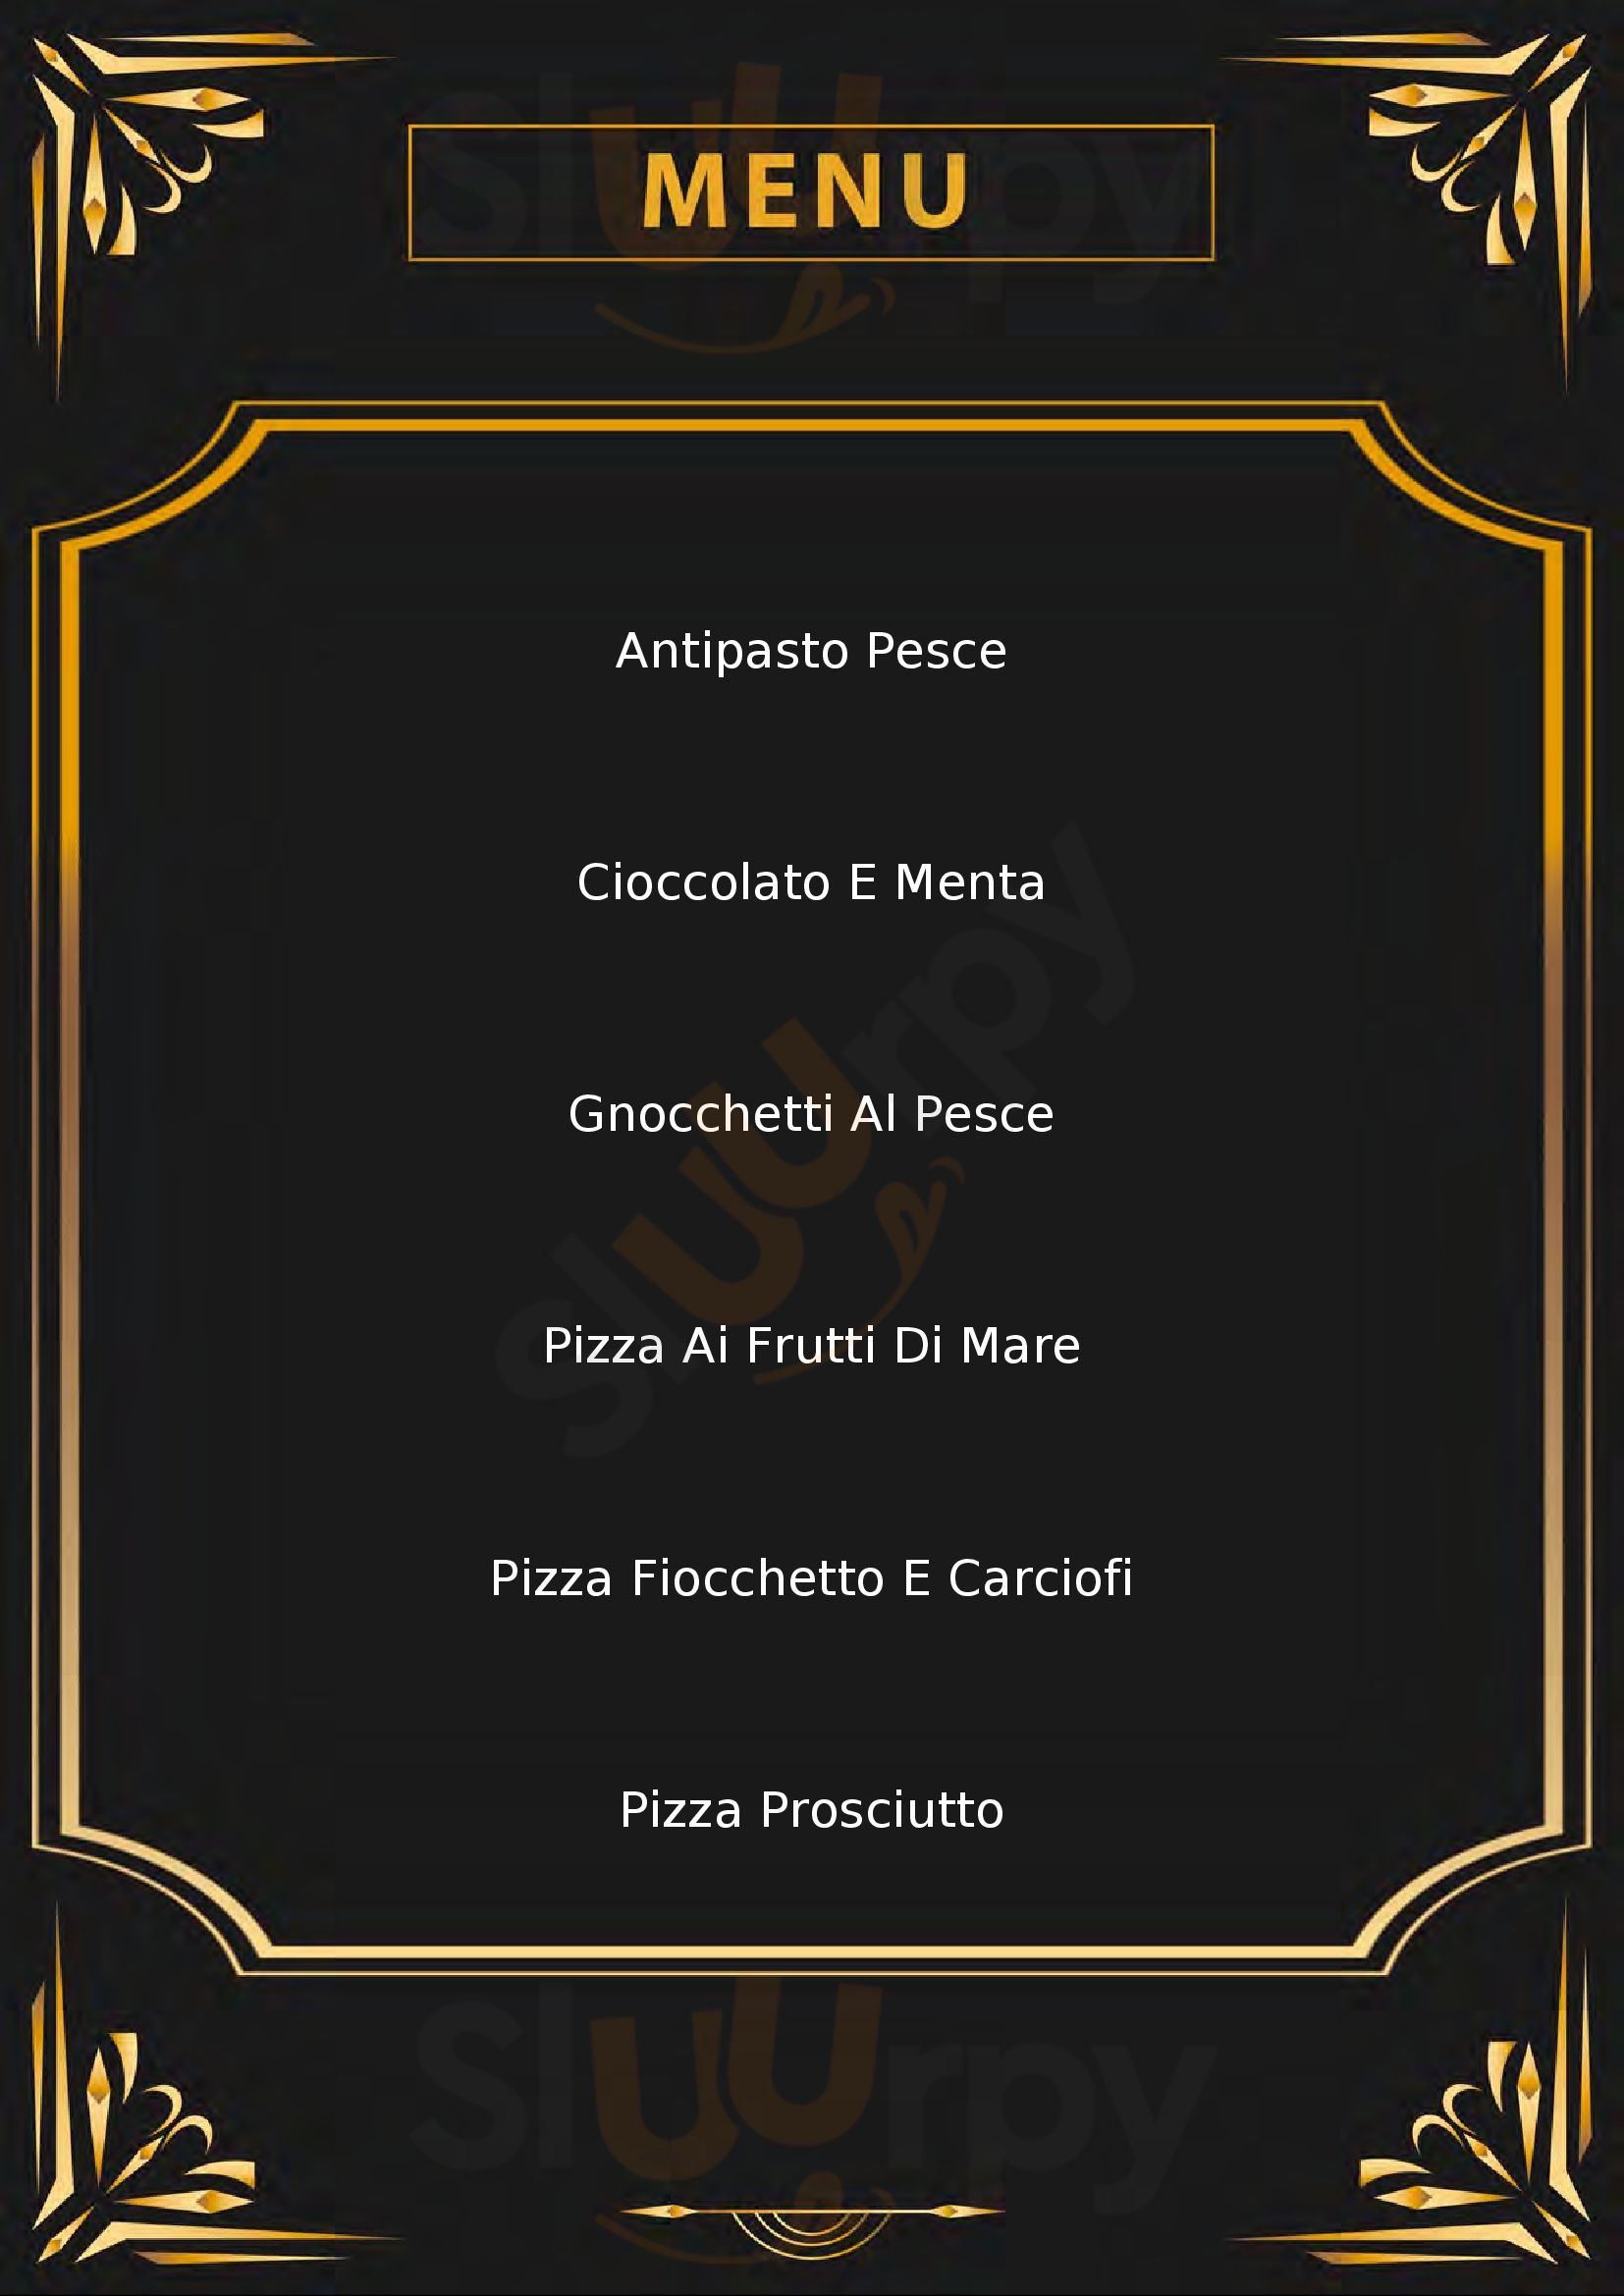 Lo Storico - Pizzeria Ristorante Cremona menù 1 pagina